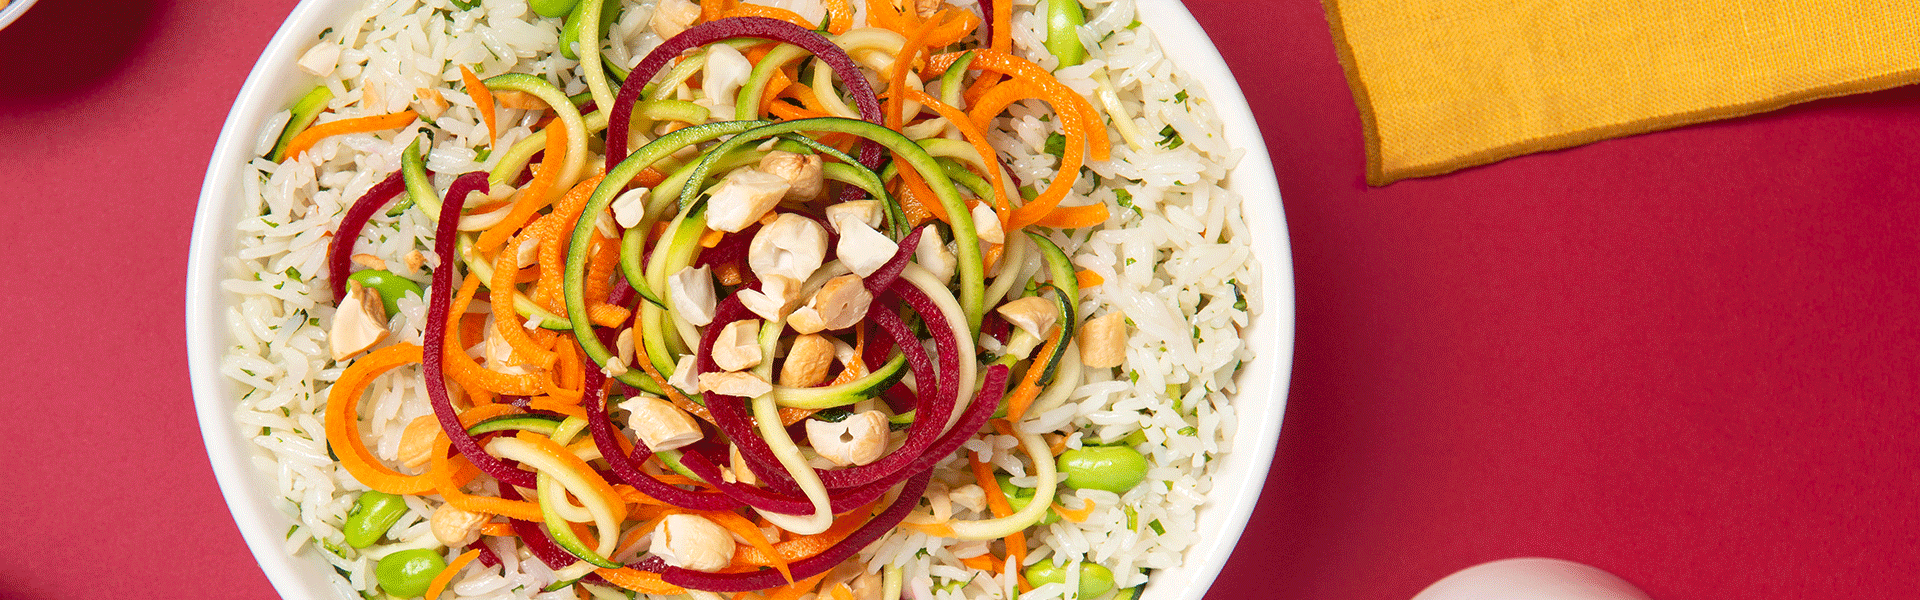 Ensalada de arroz y verduras en espiral con aderezo asiático